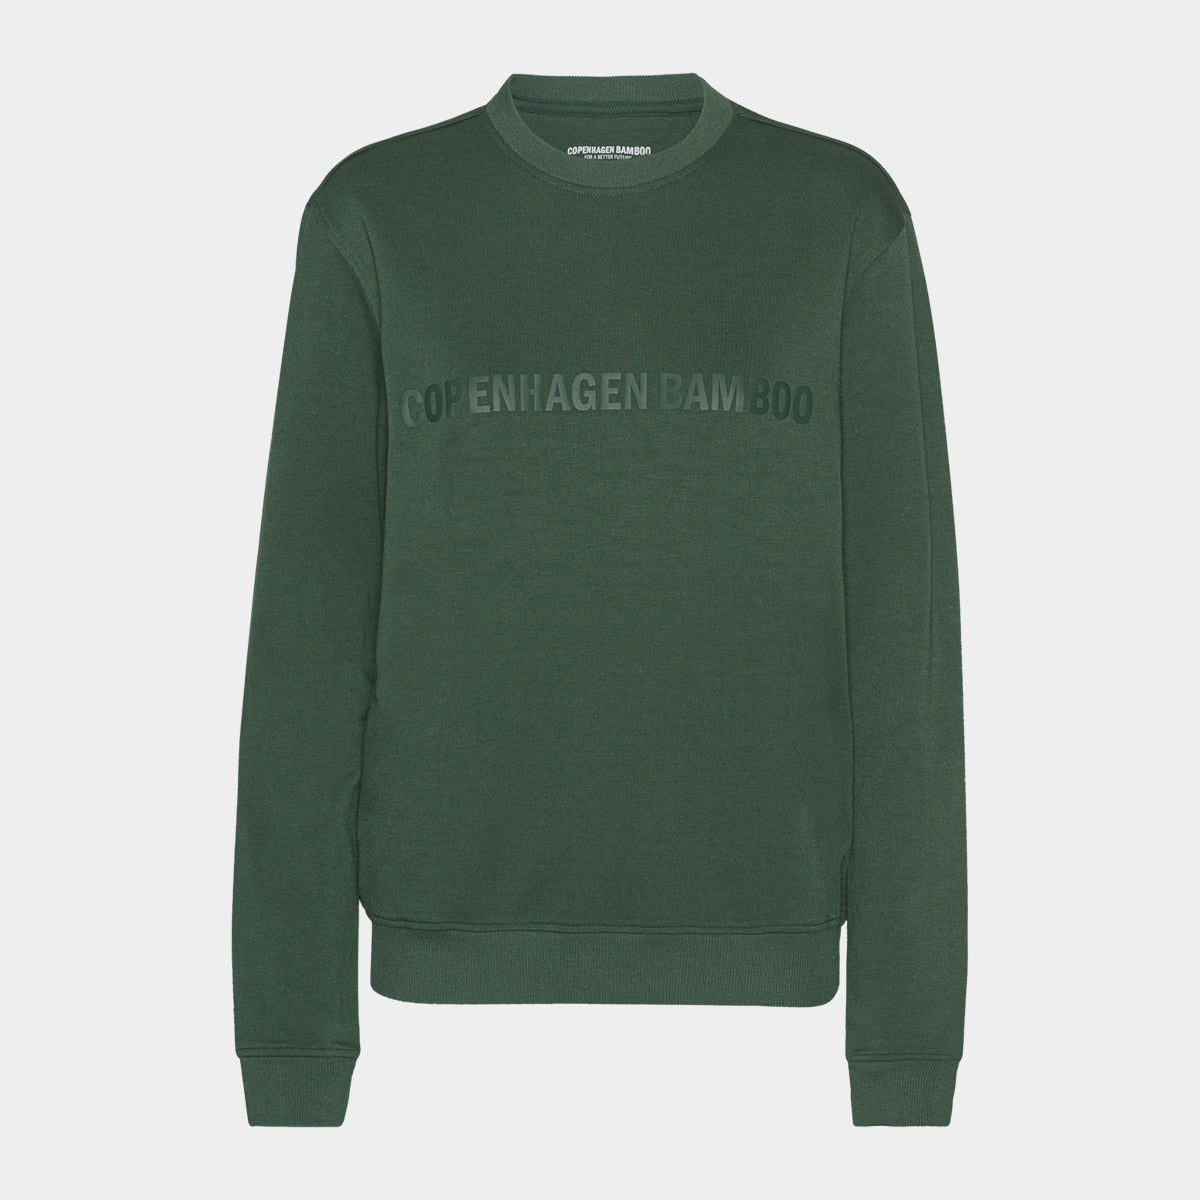 Se Grøn bambus sweatshirt til mænd med logo fra Copenhagen Bamboo, XS hos Bambustøj.dk